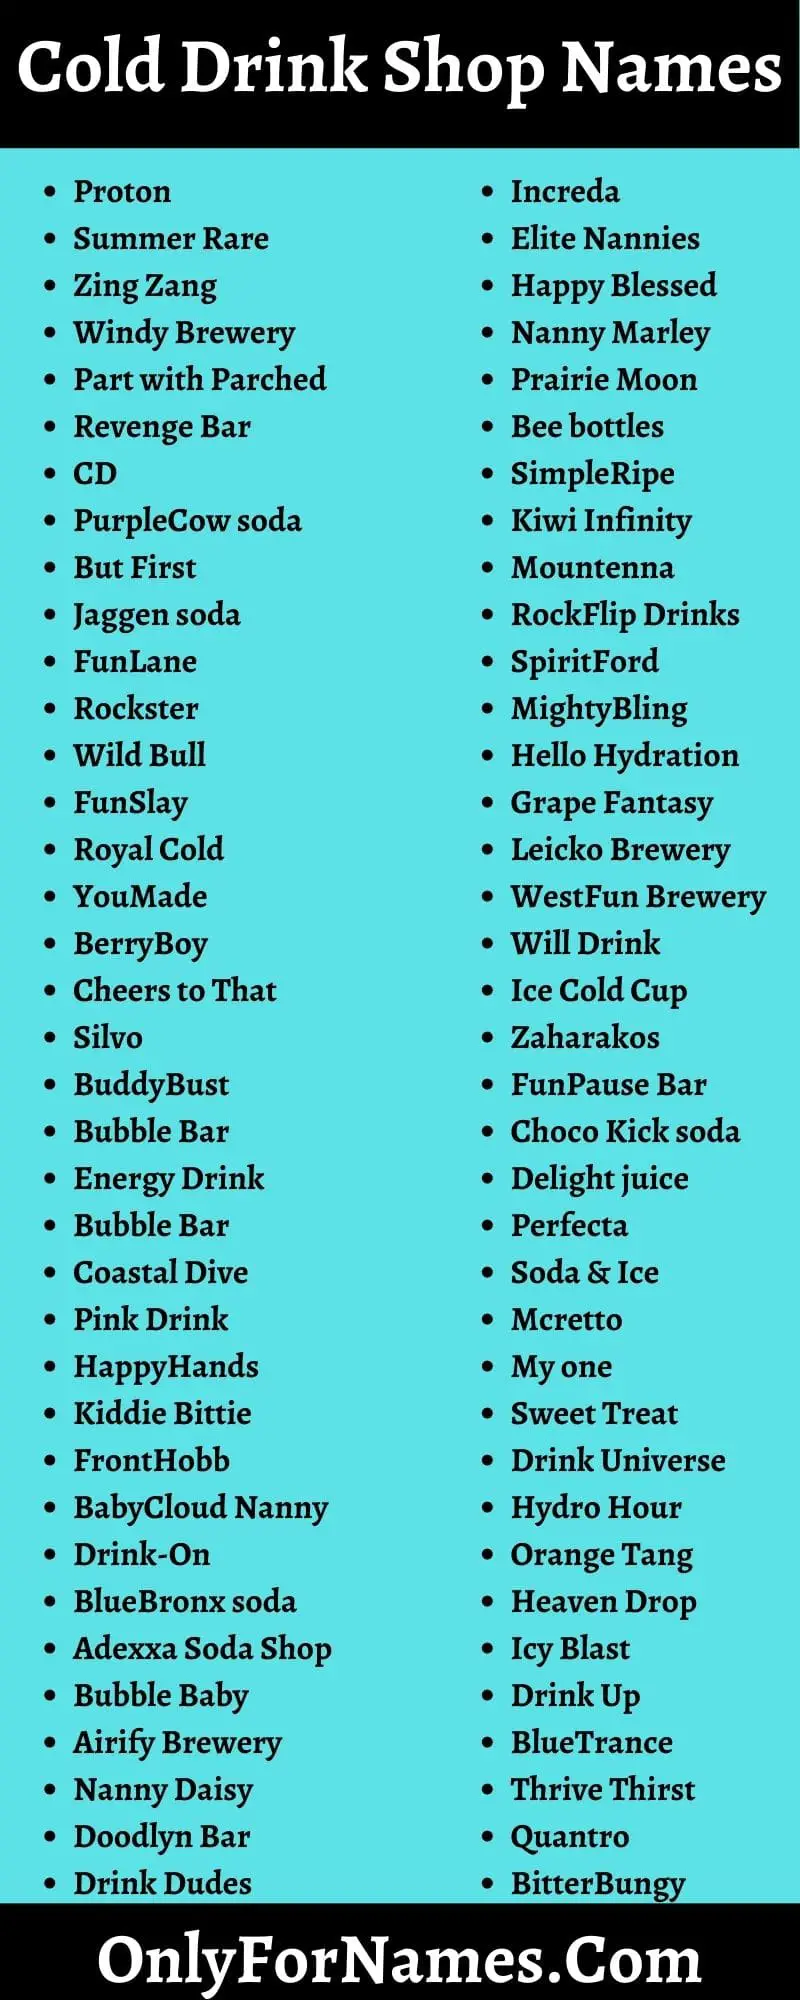 Cold Drink Shop Names